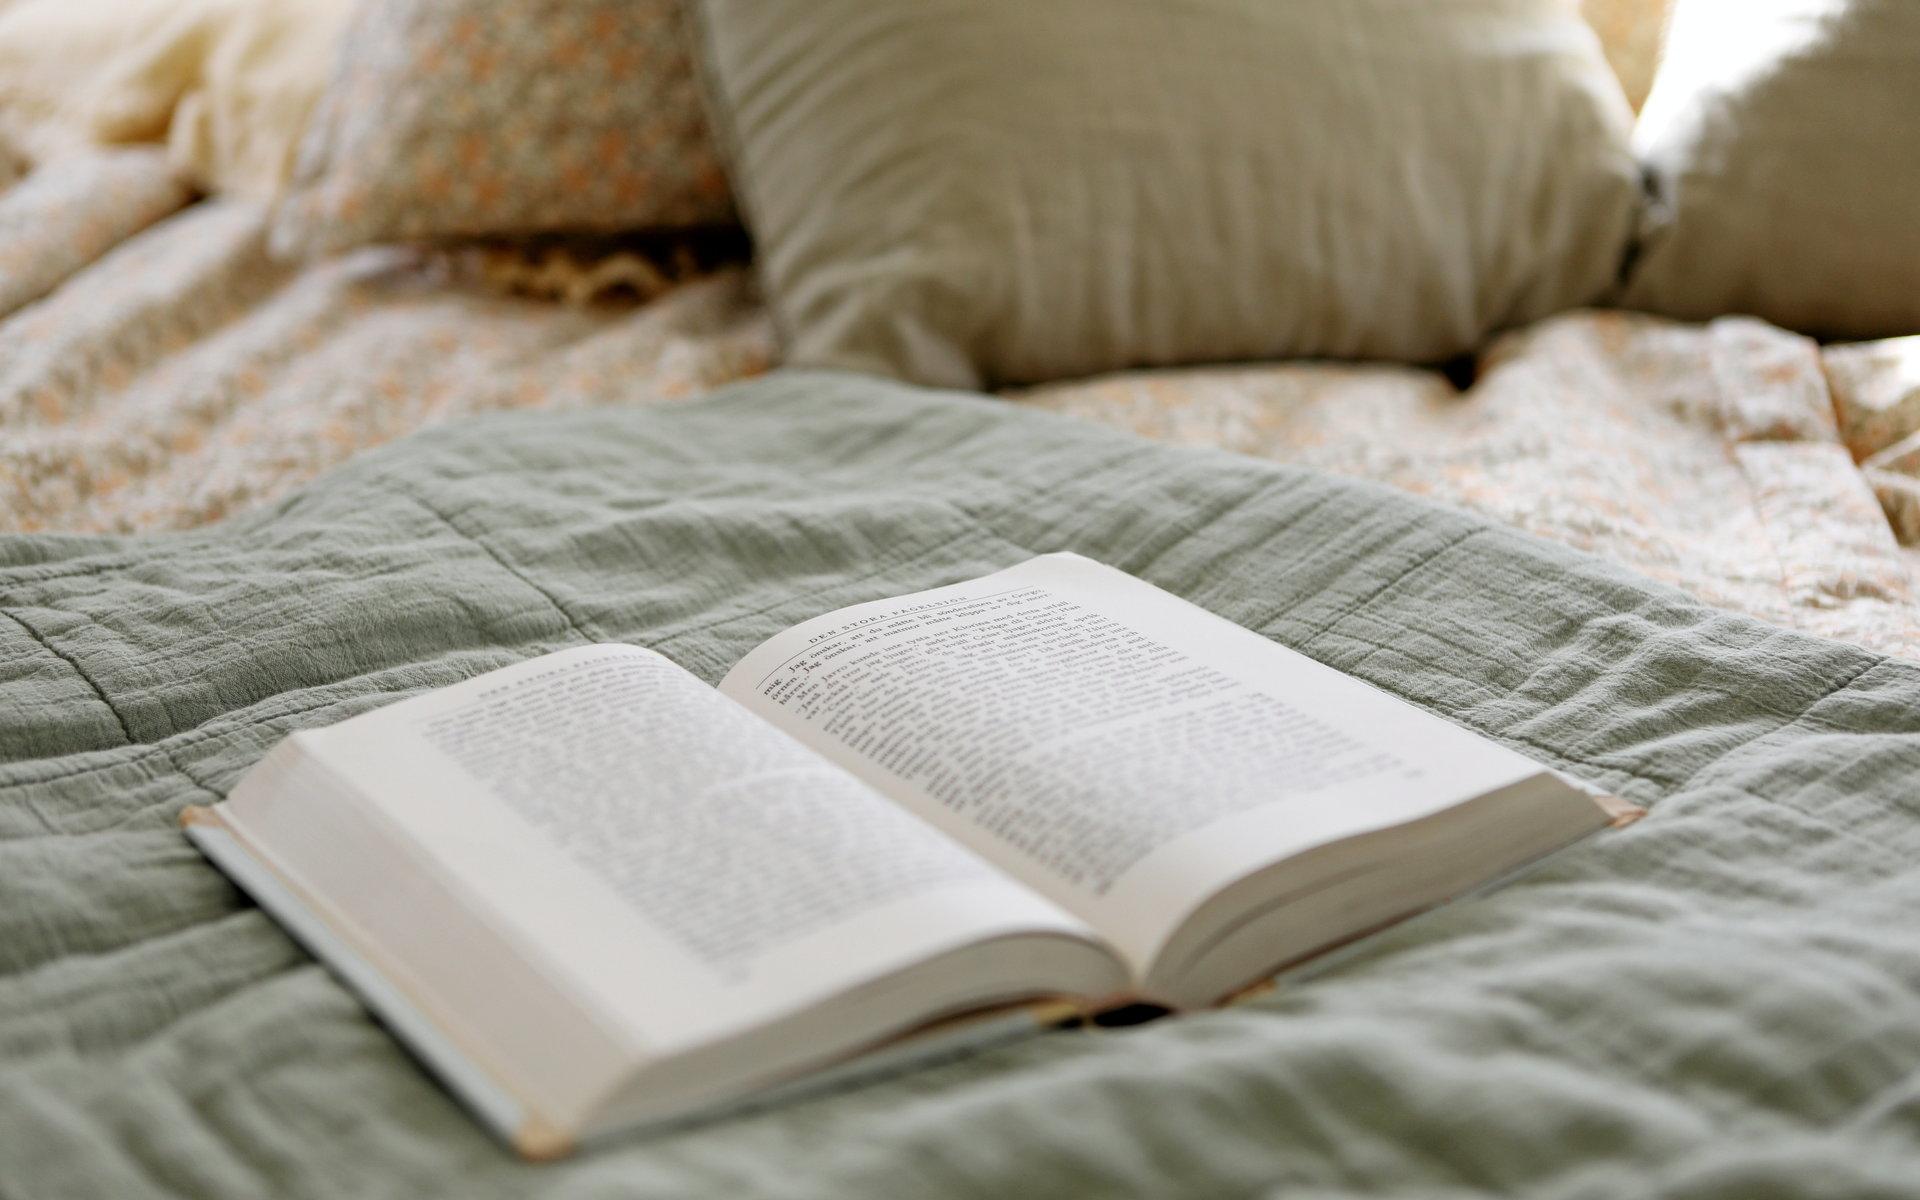 Laddat för läsning. När sängen är uppbäddad mäter den 2 x 2 meter och är större än någon av sängarna i parets hem.